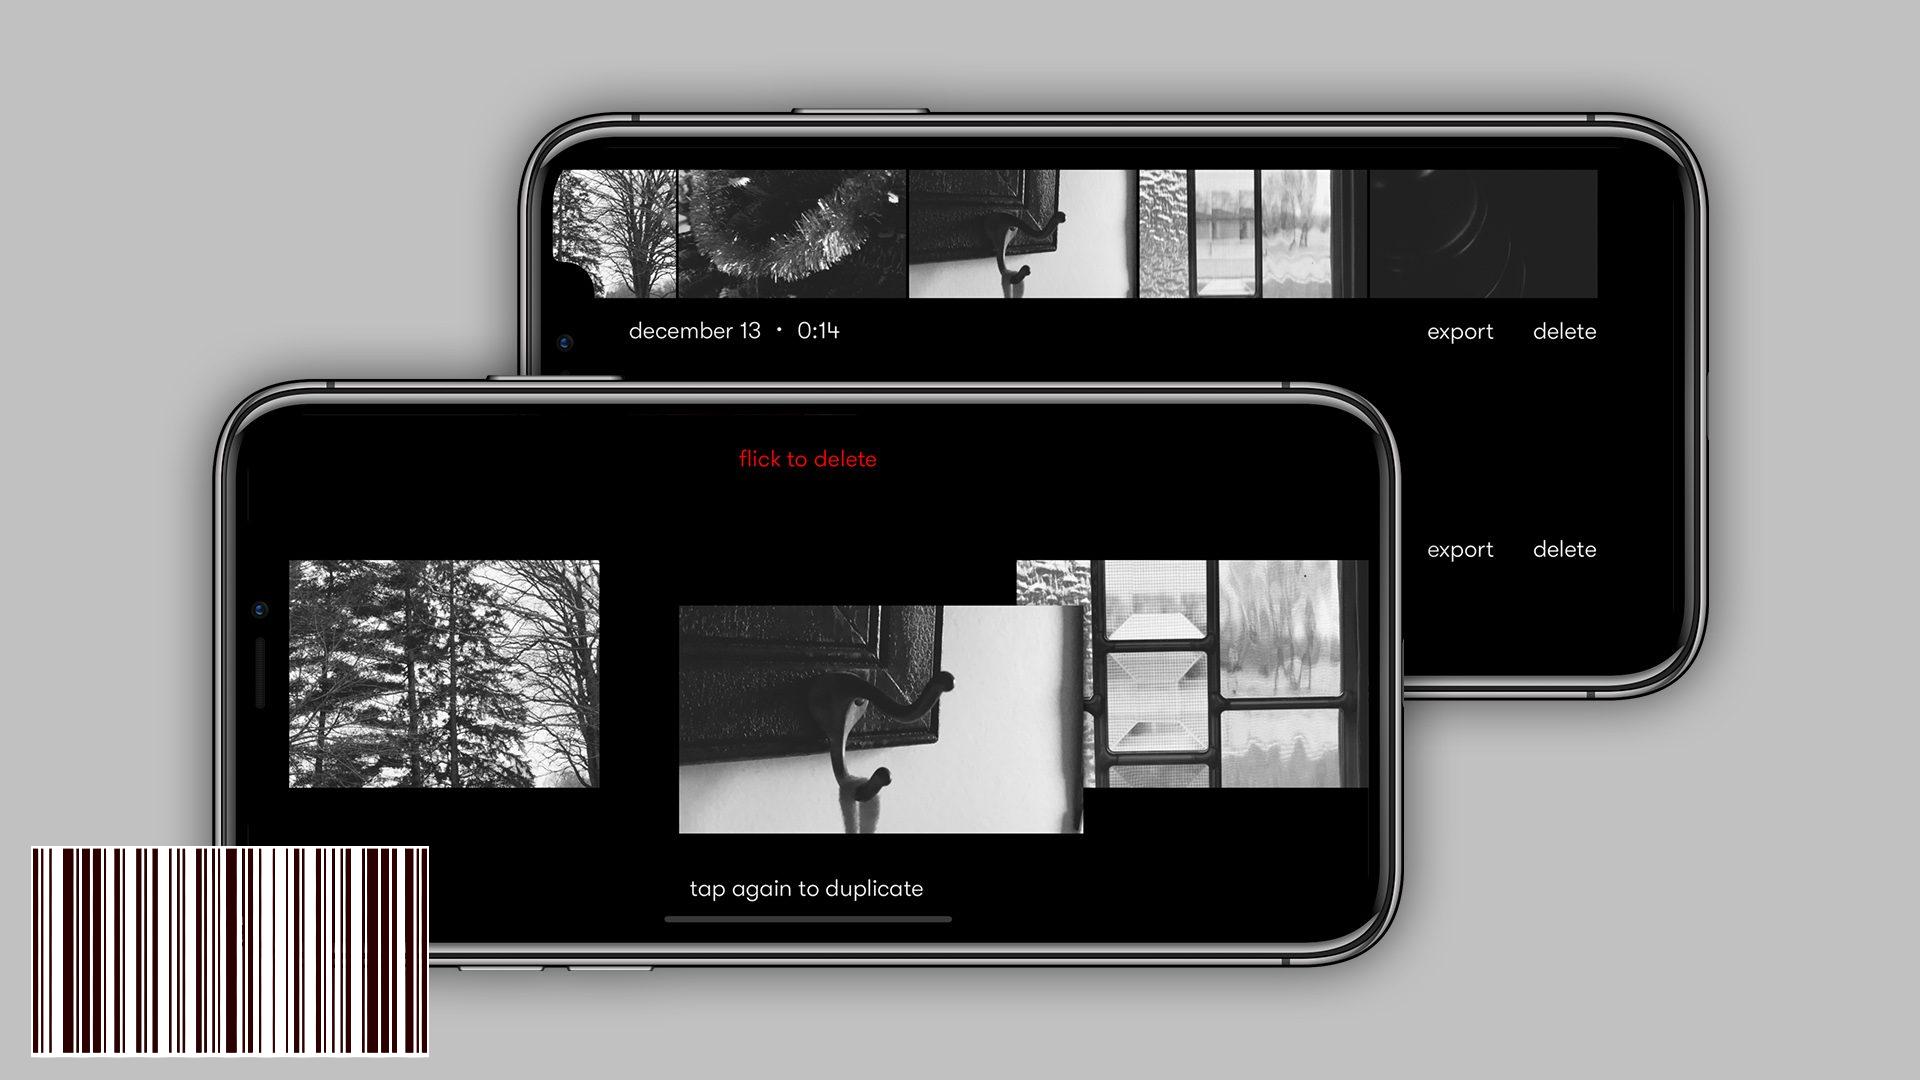 يتيح لك تطبيق Nizo تصوير وتحرير مقاطع الفيديو الخاصة بك في وقت واحد